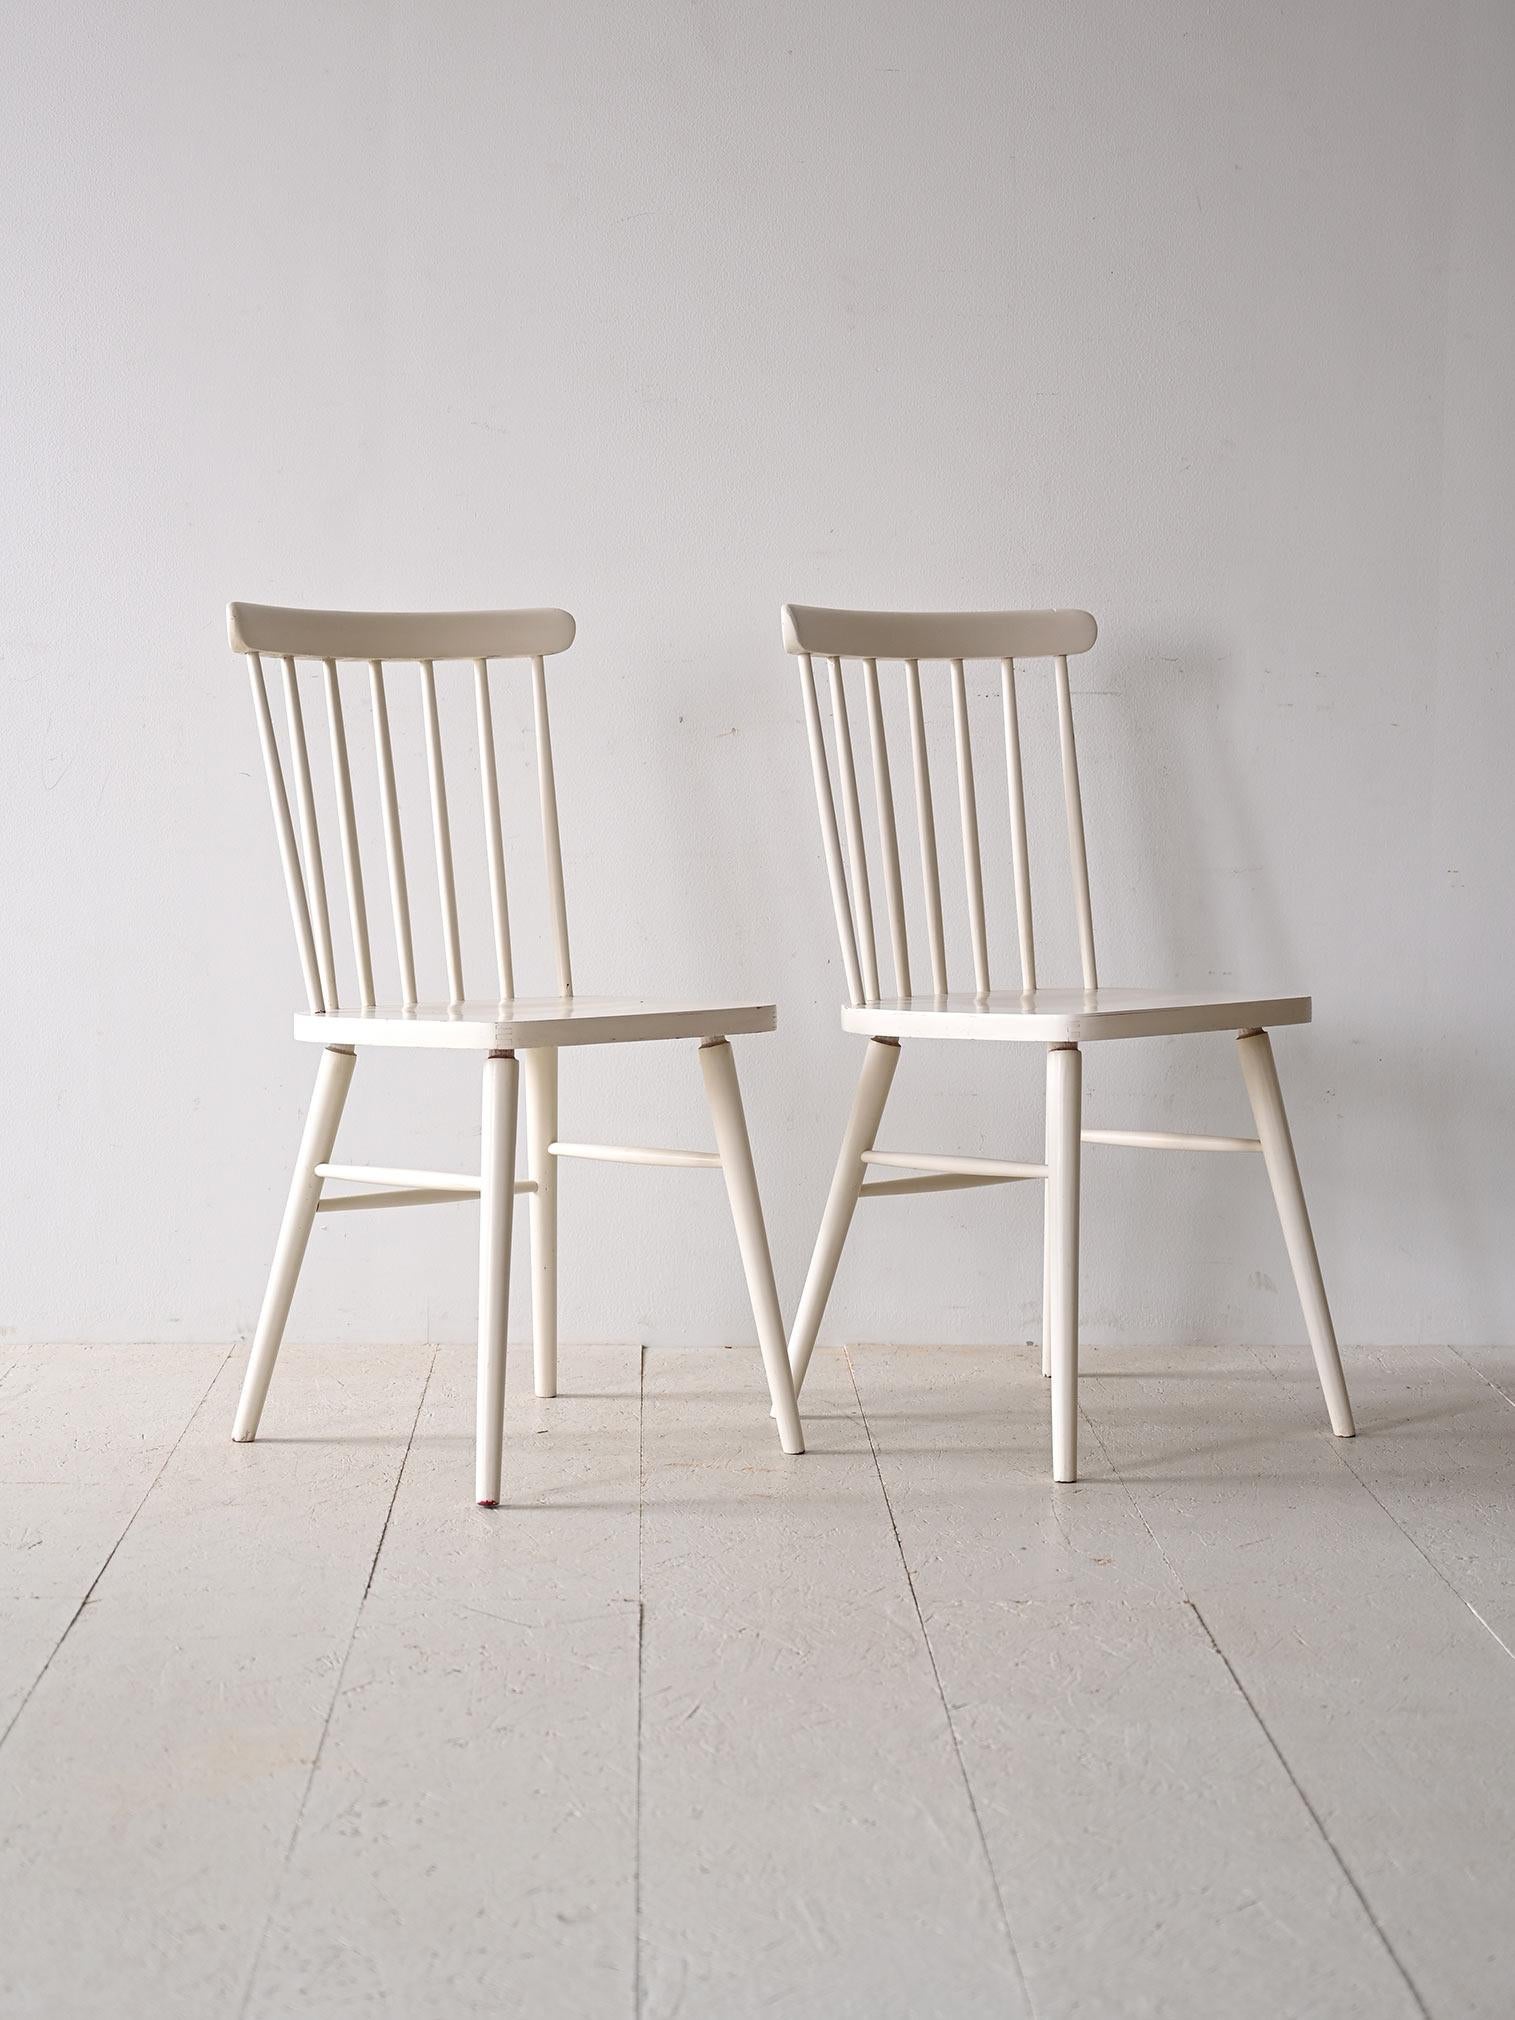 Zwei originale Holzstühle im Vintage-Stil.

Dieses weltberühmt gewordene Sitzmodell wird auch heute noch produziert, denn sein Design ist äußerst zeitgemäß. Er zeichnet sich durch minimalistische, elegante Linien und eine ergonomische Sitzfläche